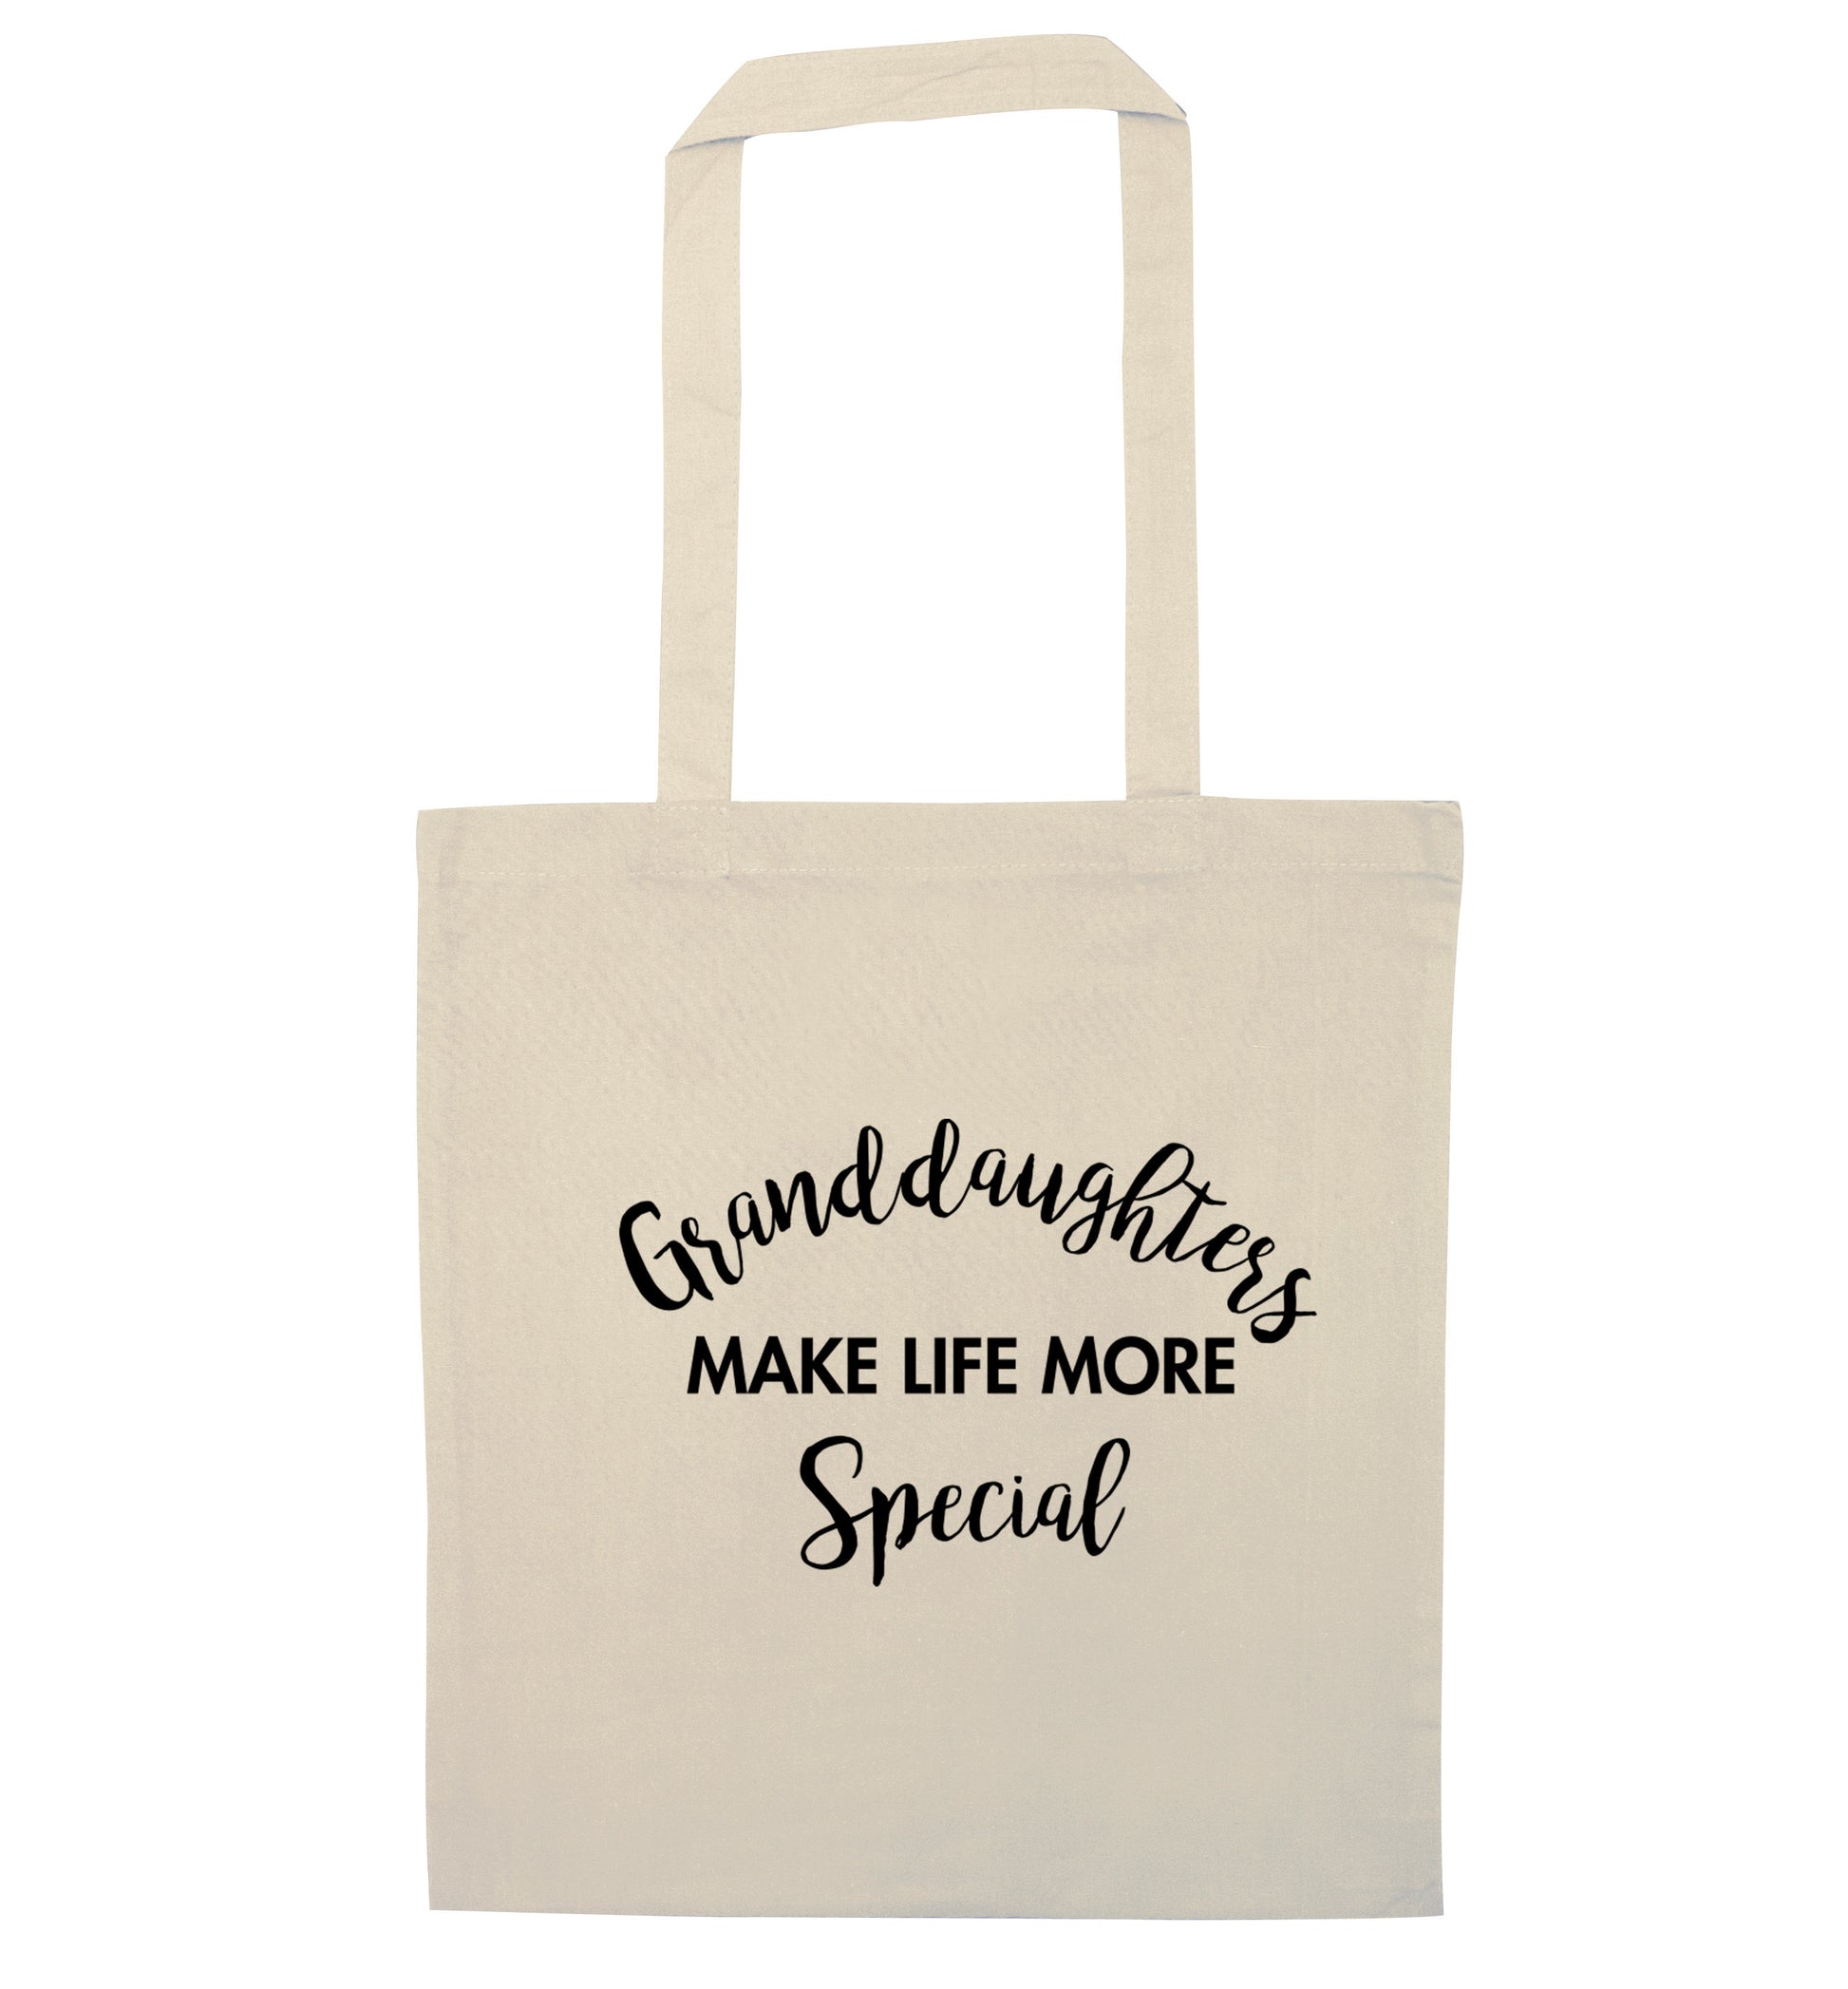 Granddaughters make life more special natural tote bag